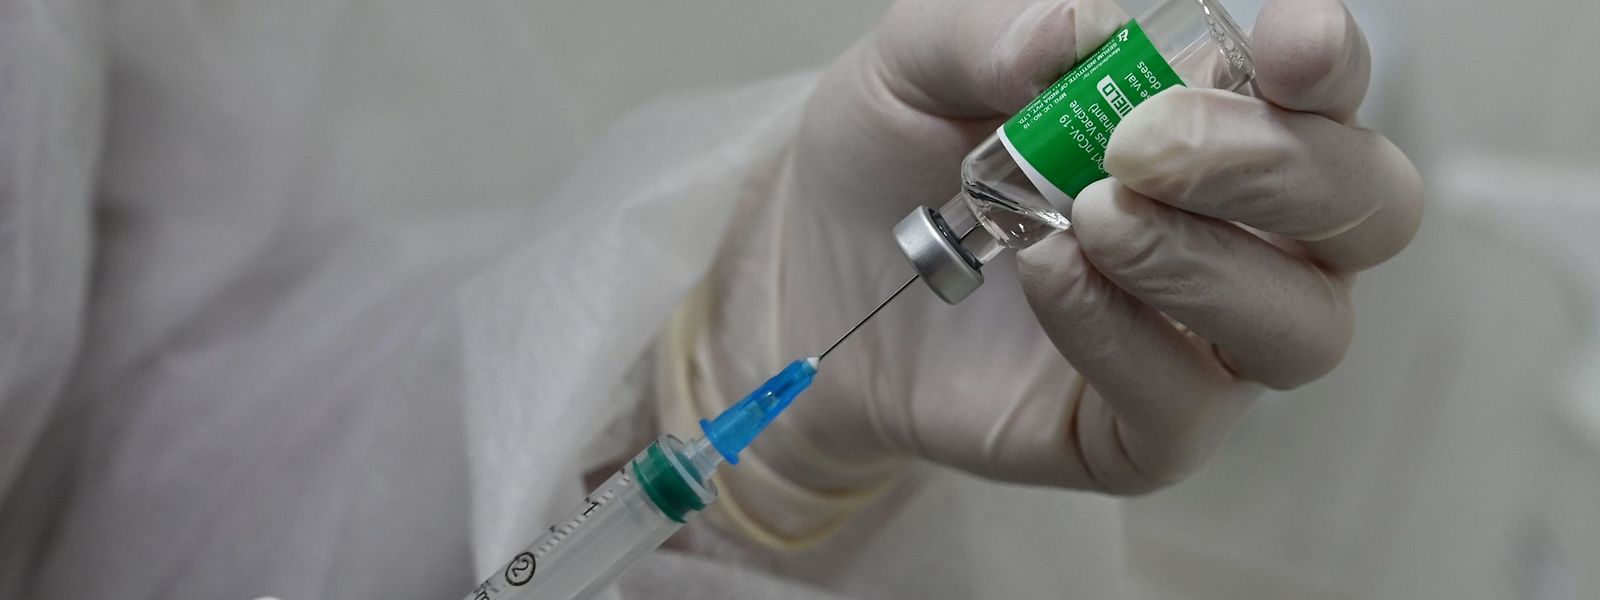 Le Luxembourg continuera à administrer le vaccin «sans distinction d'âge et de sexe».